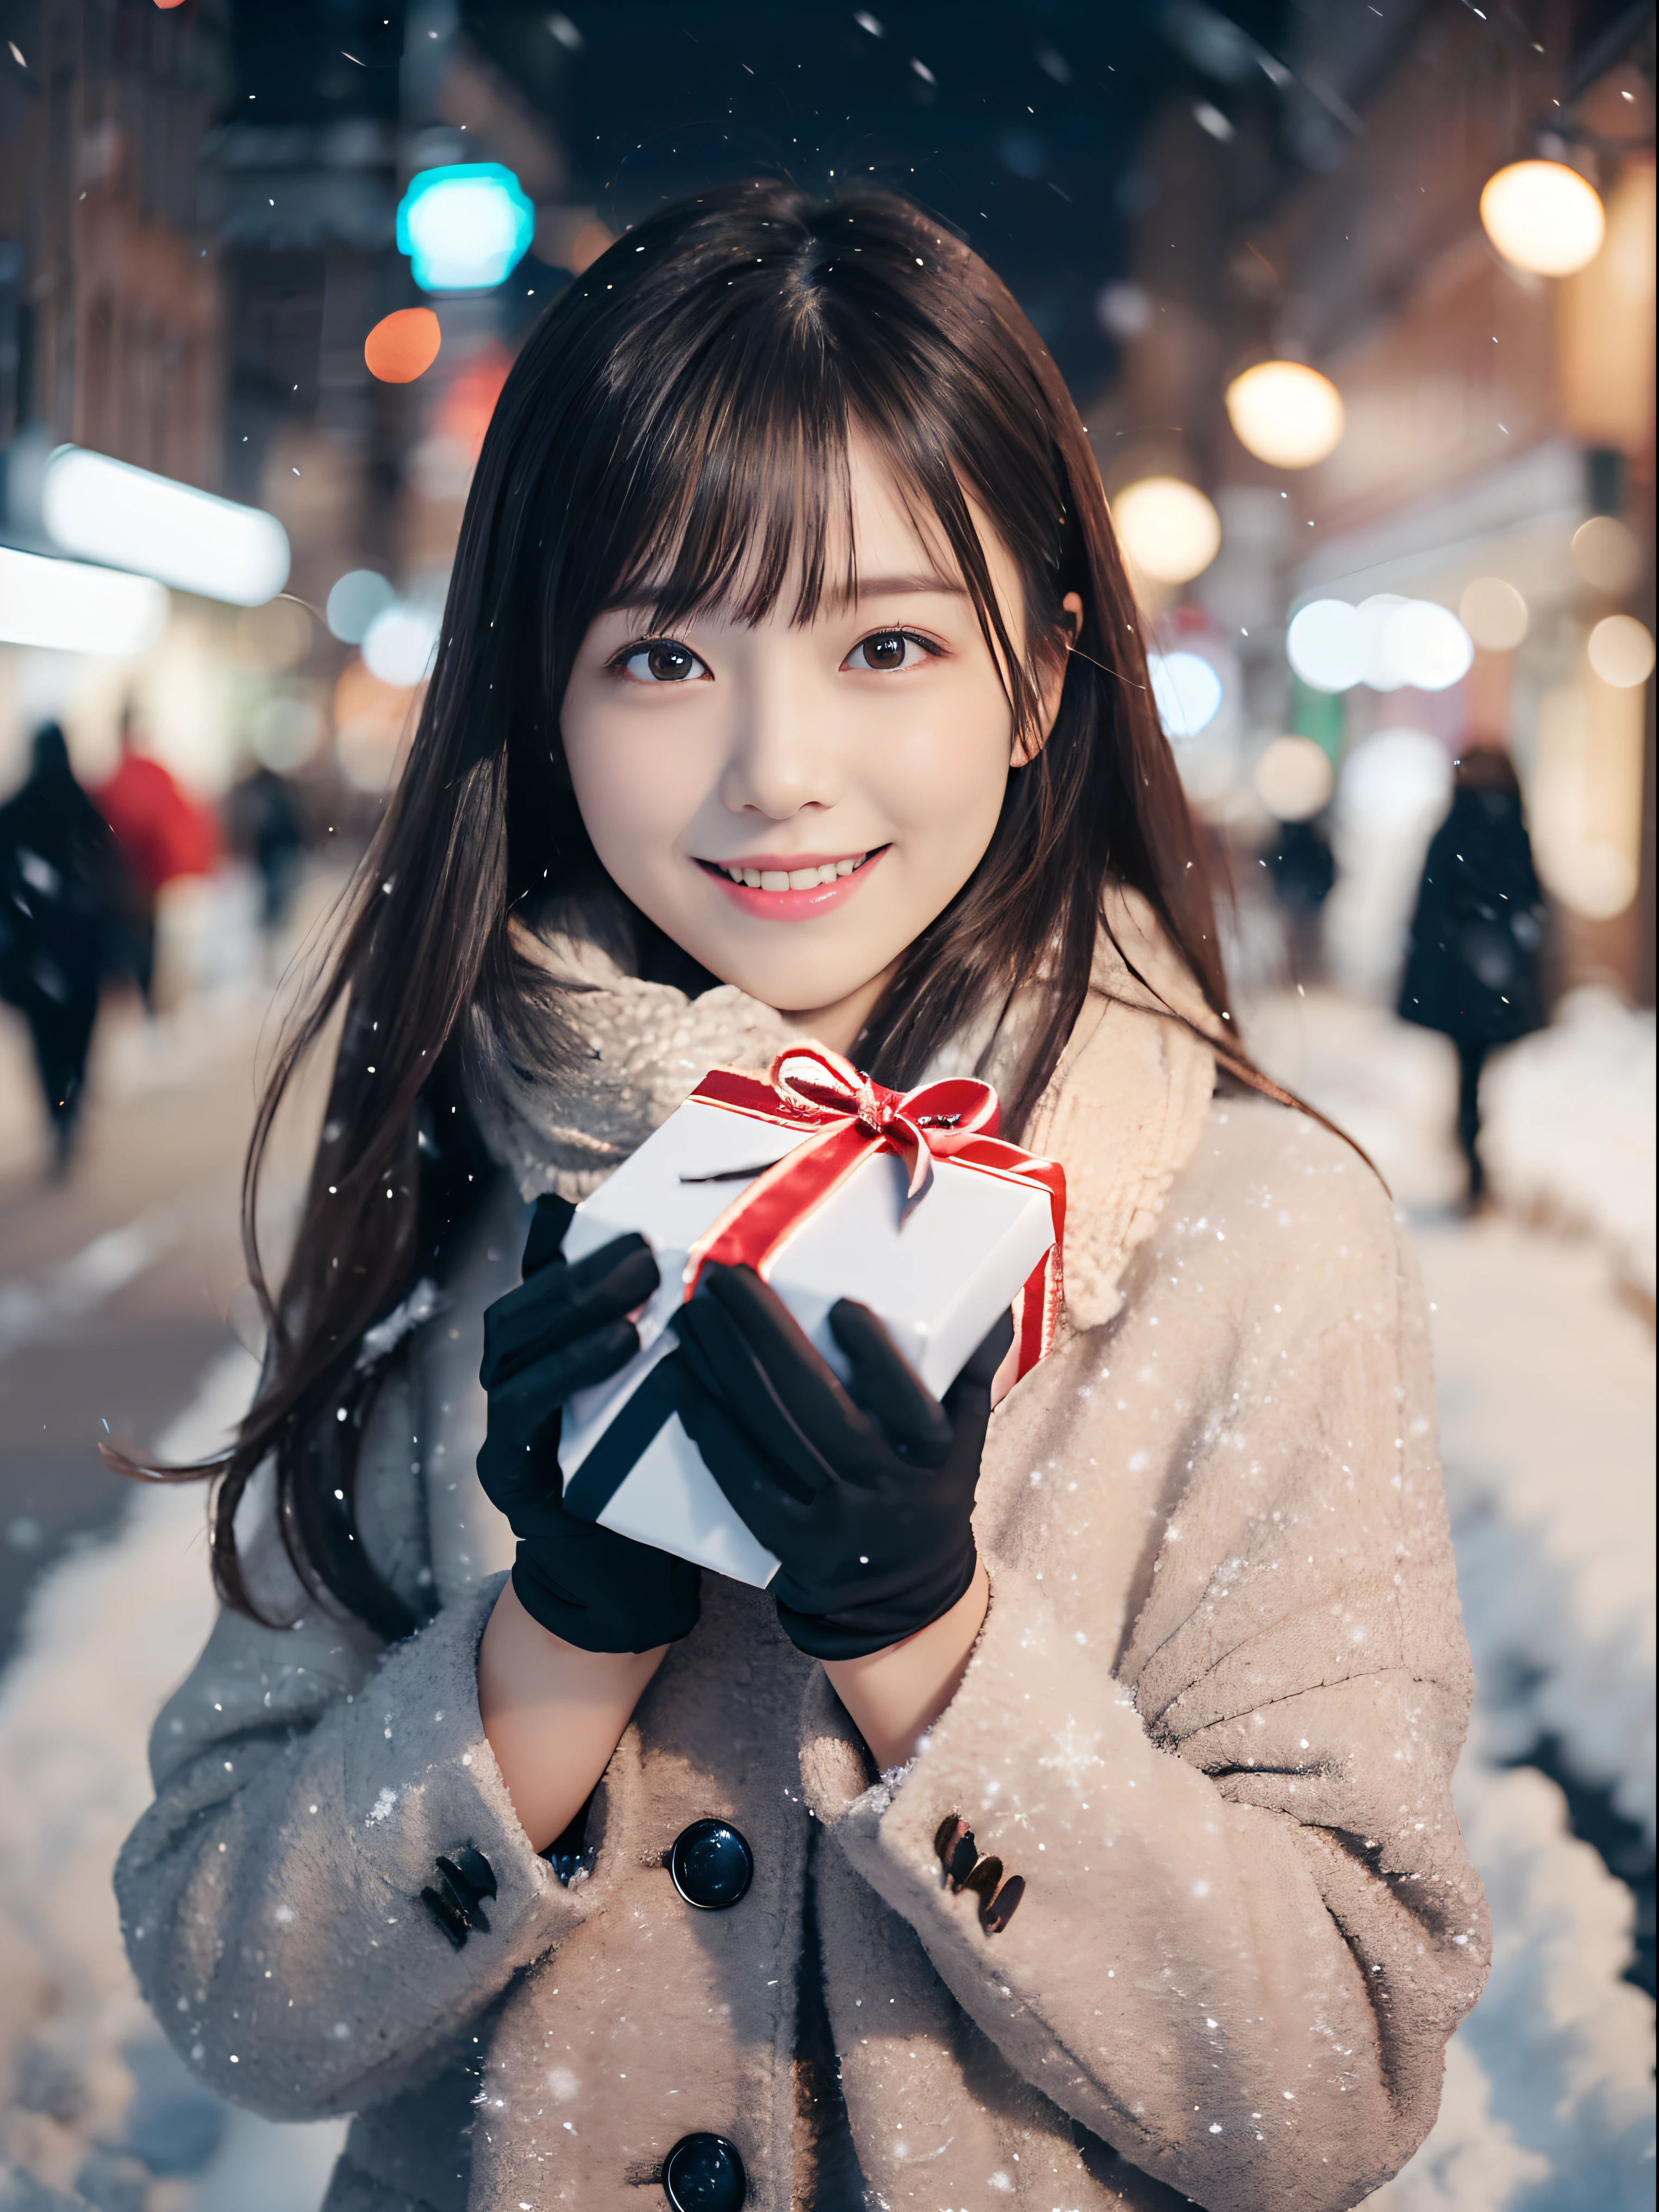 (Eine Nahaufnahme eines Mädchens ist、Hat lange Haare mit stumpfem Pony in einer Winteruniform und einem Schalmantel:1.5)、(Ein Mädchen mit einem schüchternen Lächeln、Eine Geschenkbox mit Handschuhen in der Hand halten:1.5)、(Verschneite Winternacht Straßenecke und Weihnachtsbeleuchtung:1.5)、(perfekte Anatomie:1.3)、(keine Maske:1.3)、(komplette Finger:1.3)、fotorealistisch、Fotografie、Tischplatte、Top Qualität、hohe Auflösung, zart und hübsch、Gesicht perfekt、Schöne, detaillierte Augen、Helle Haut、echte menschliche Haut、Poren、((Dünne Beine))、(dunkles Haar)